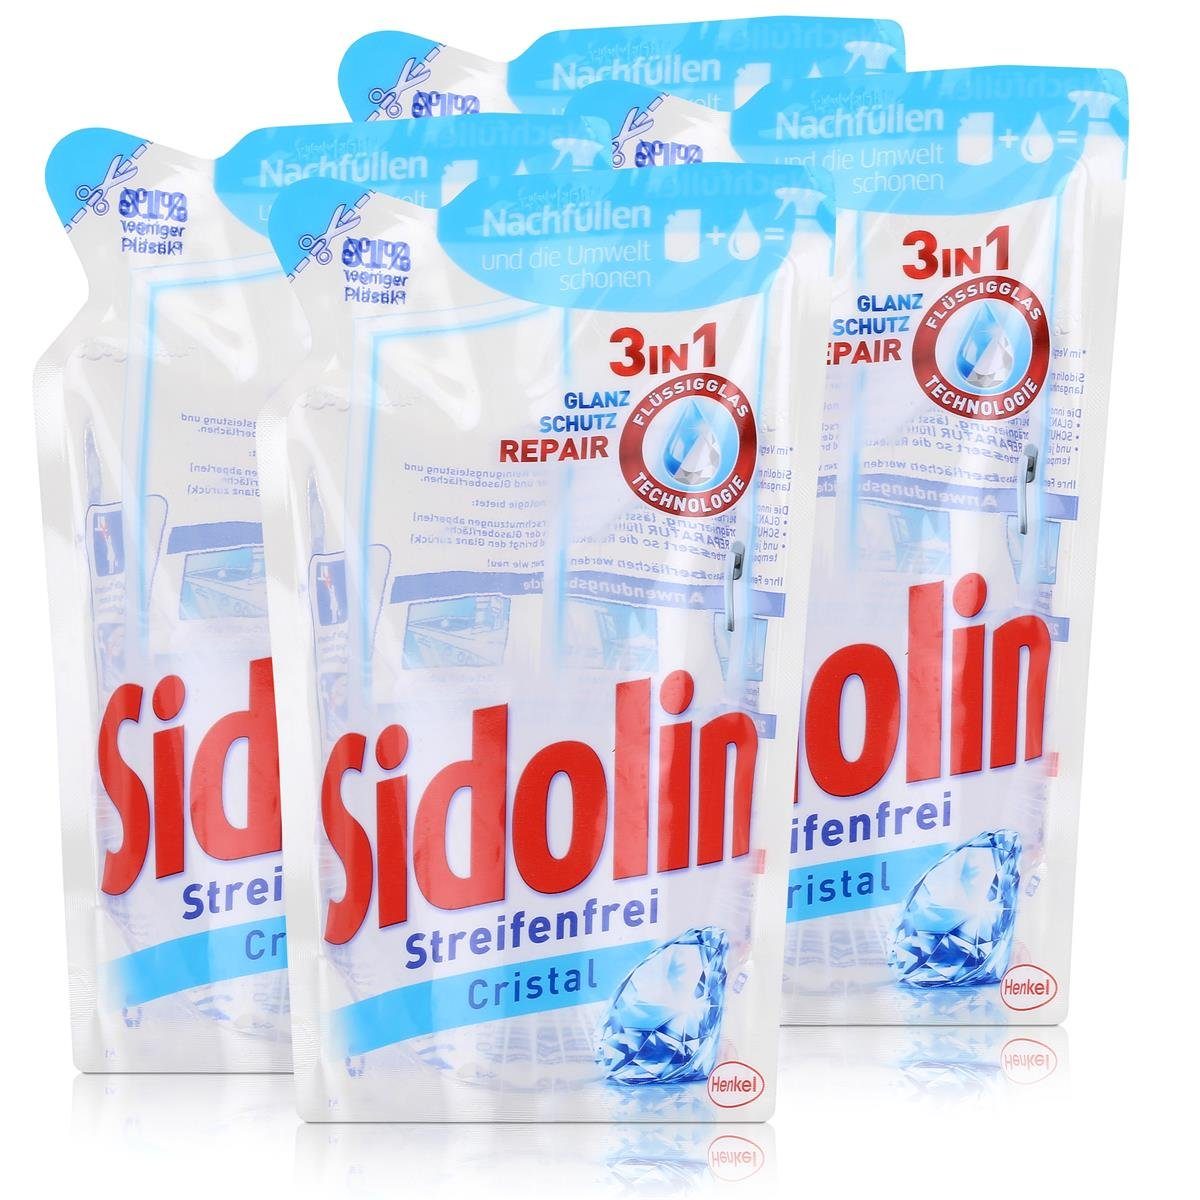 SIDOLIN Sidolin Streifenfrei Cristal Nachfüller Glasreiniger Pack 250ml (4er Glasreiniger 